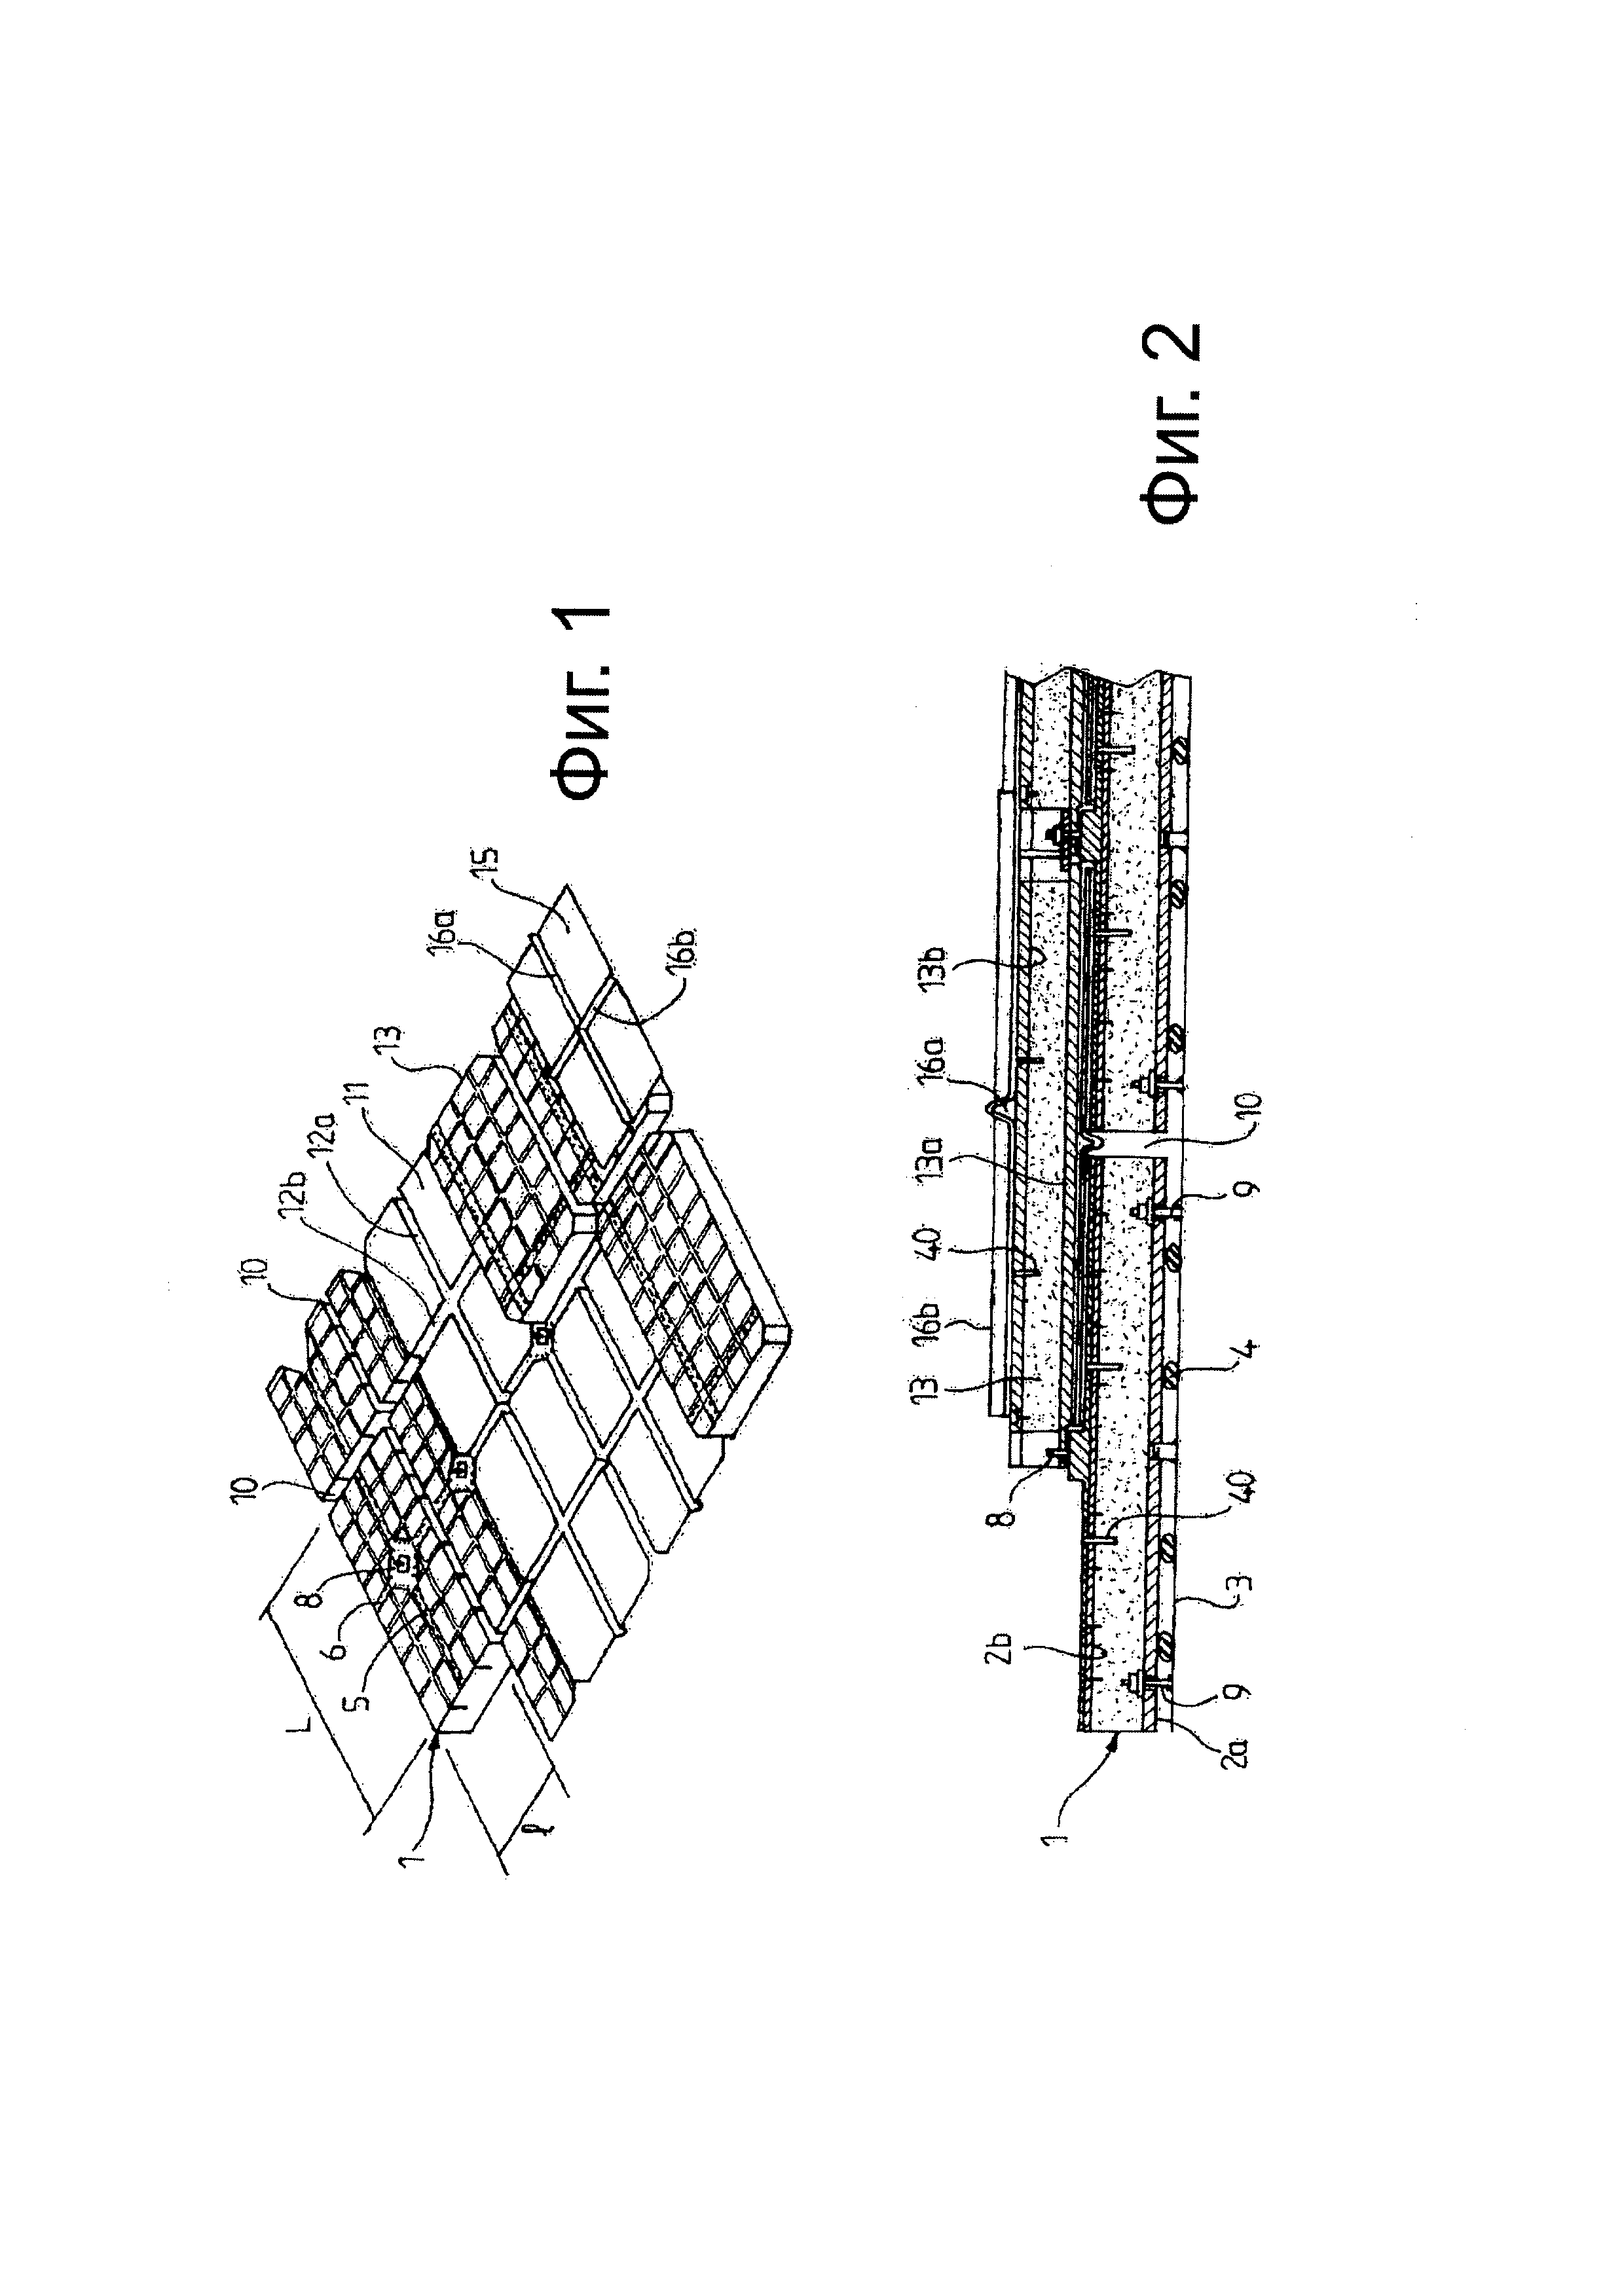 Герметичный и изотермический резервуар, содержащий металлическую мембрану с гофрированными ортогональными сгибами